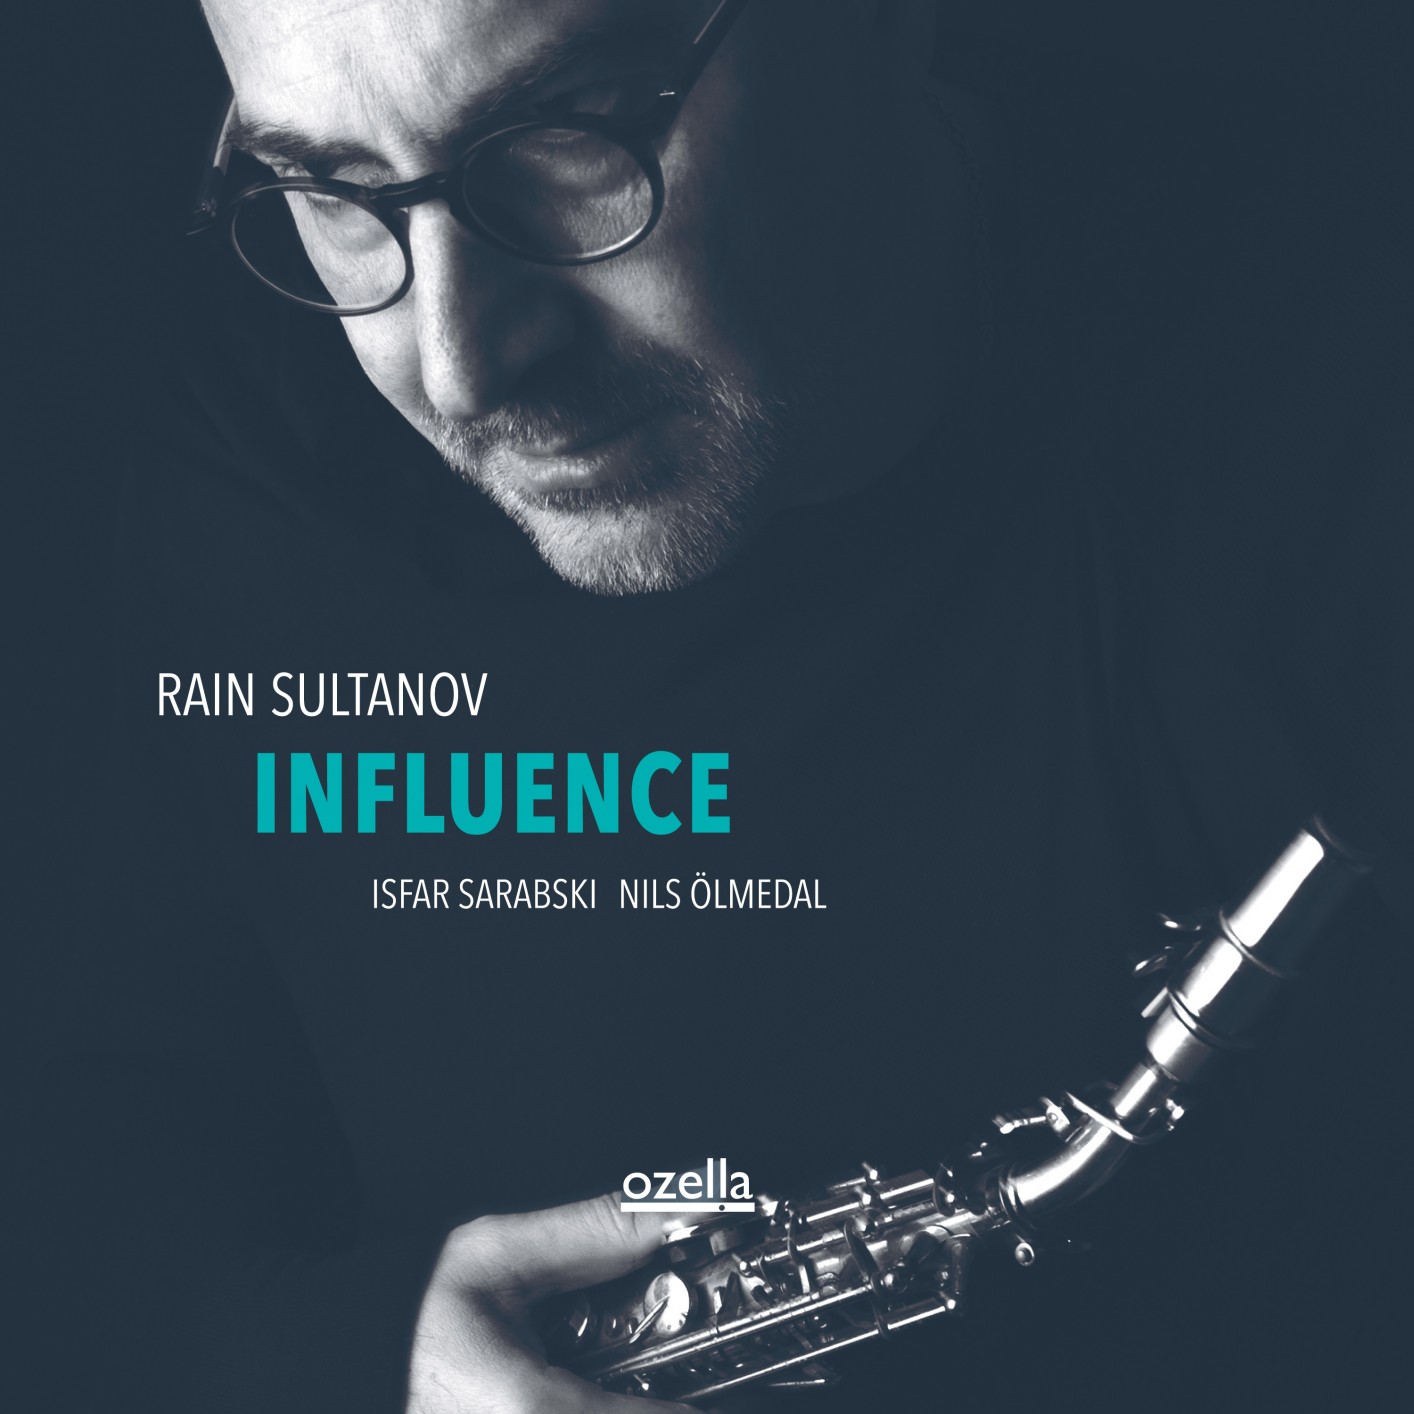 Rain Sultanov, Isfar Sarabski, Nils Olmedal - Influence (2020) [FLAC 24bit/96kHz]